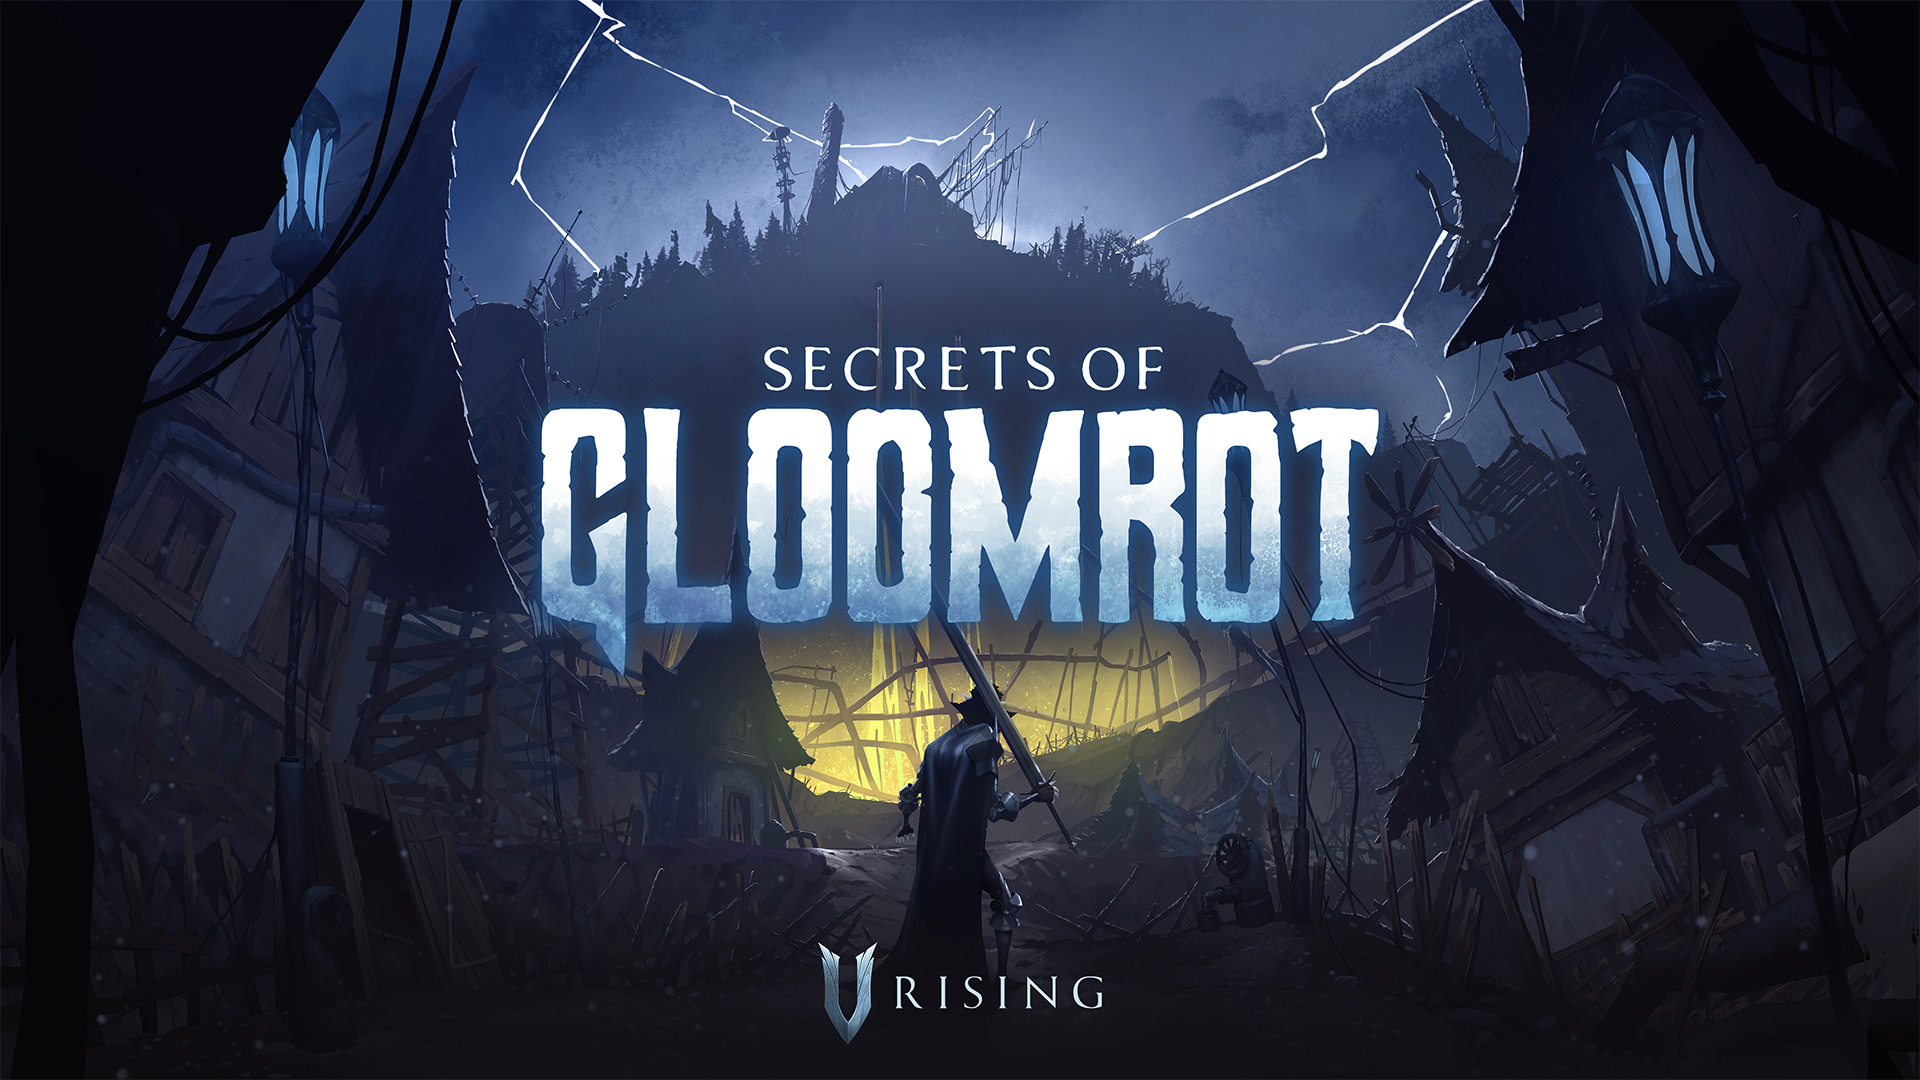 V Rising Secrets of Gloomrot gameplay trailer